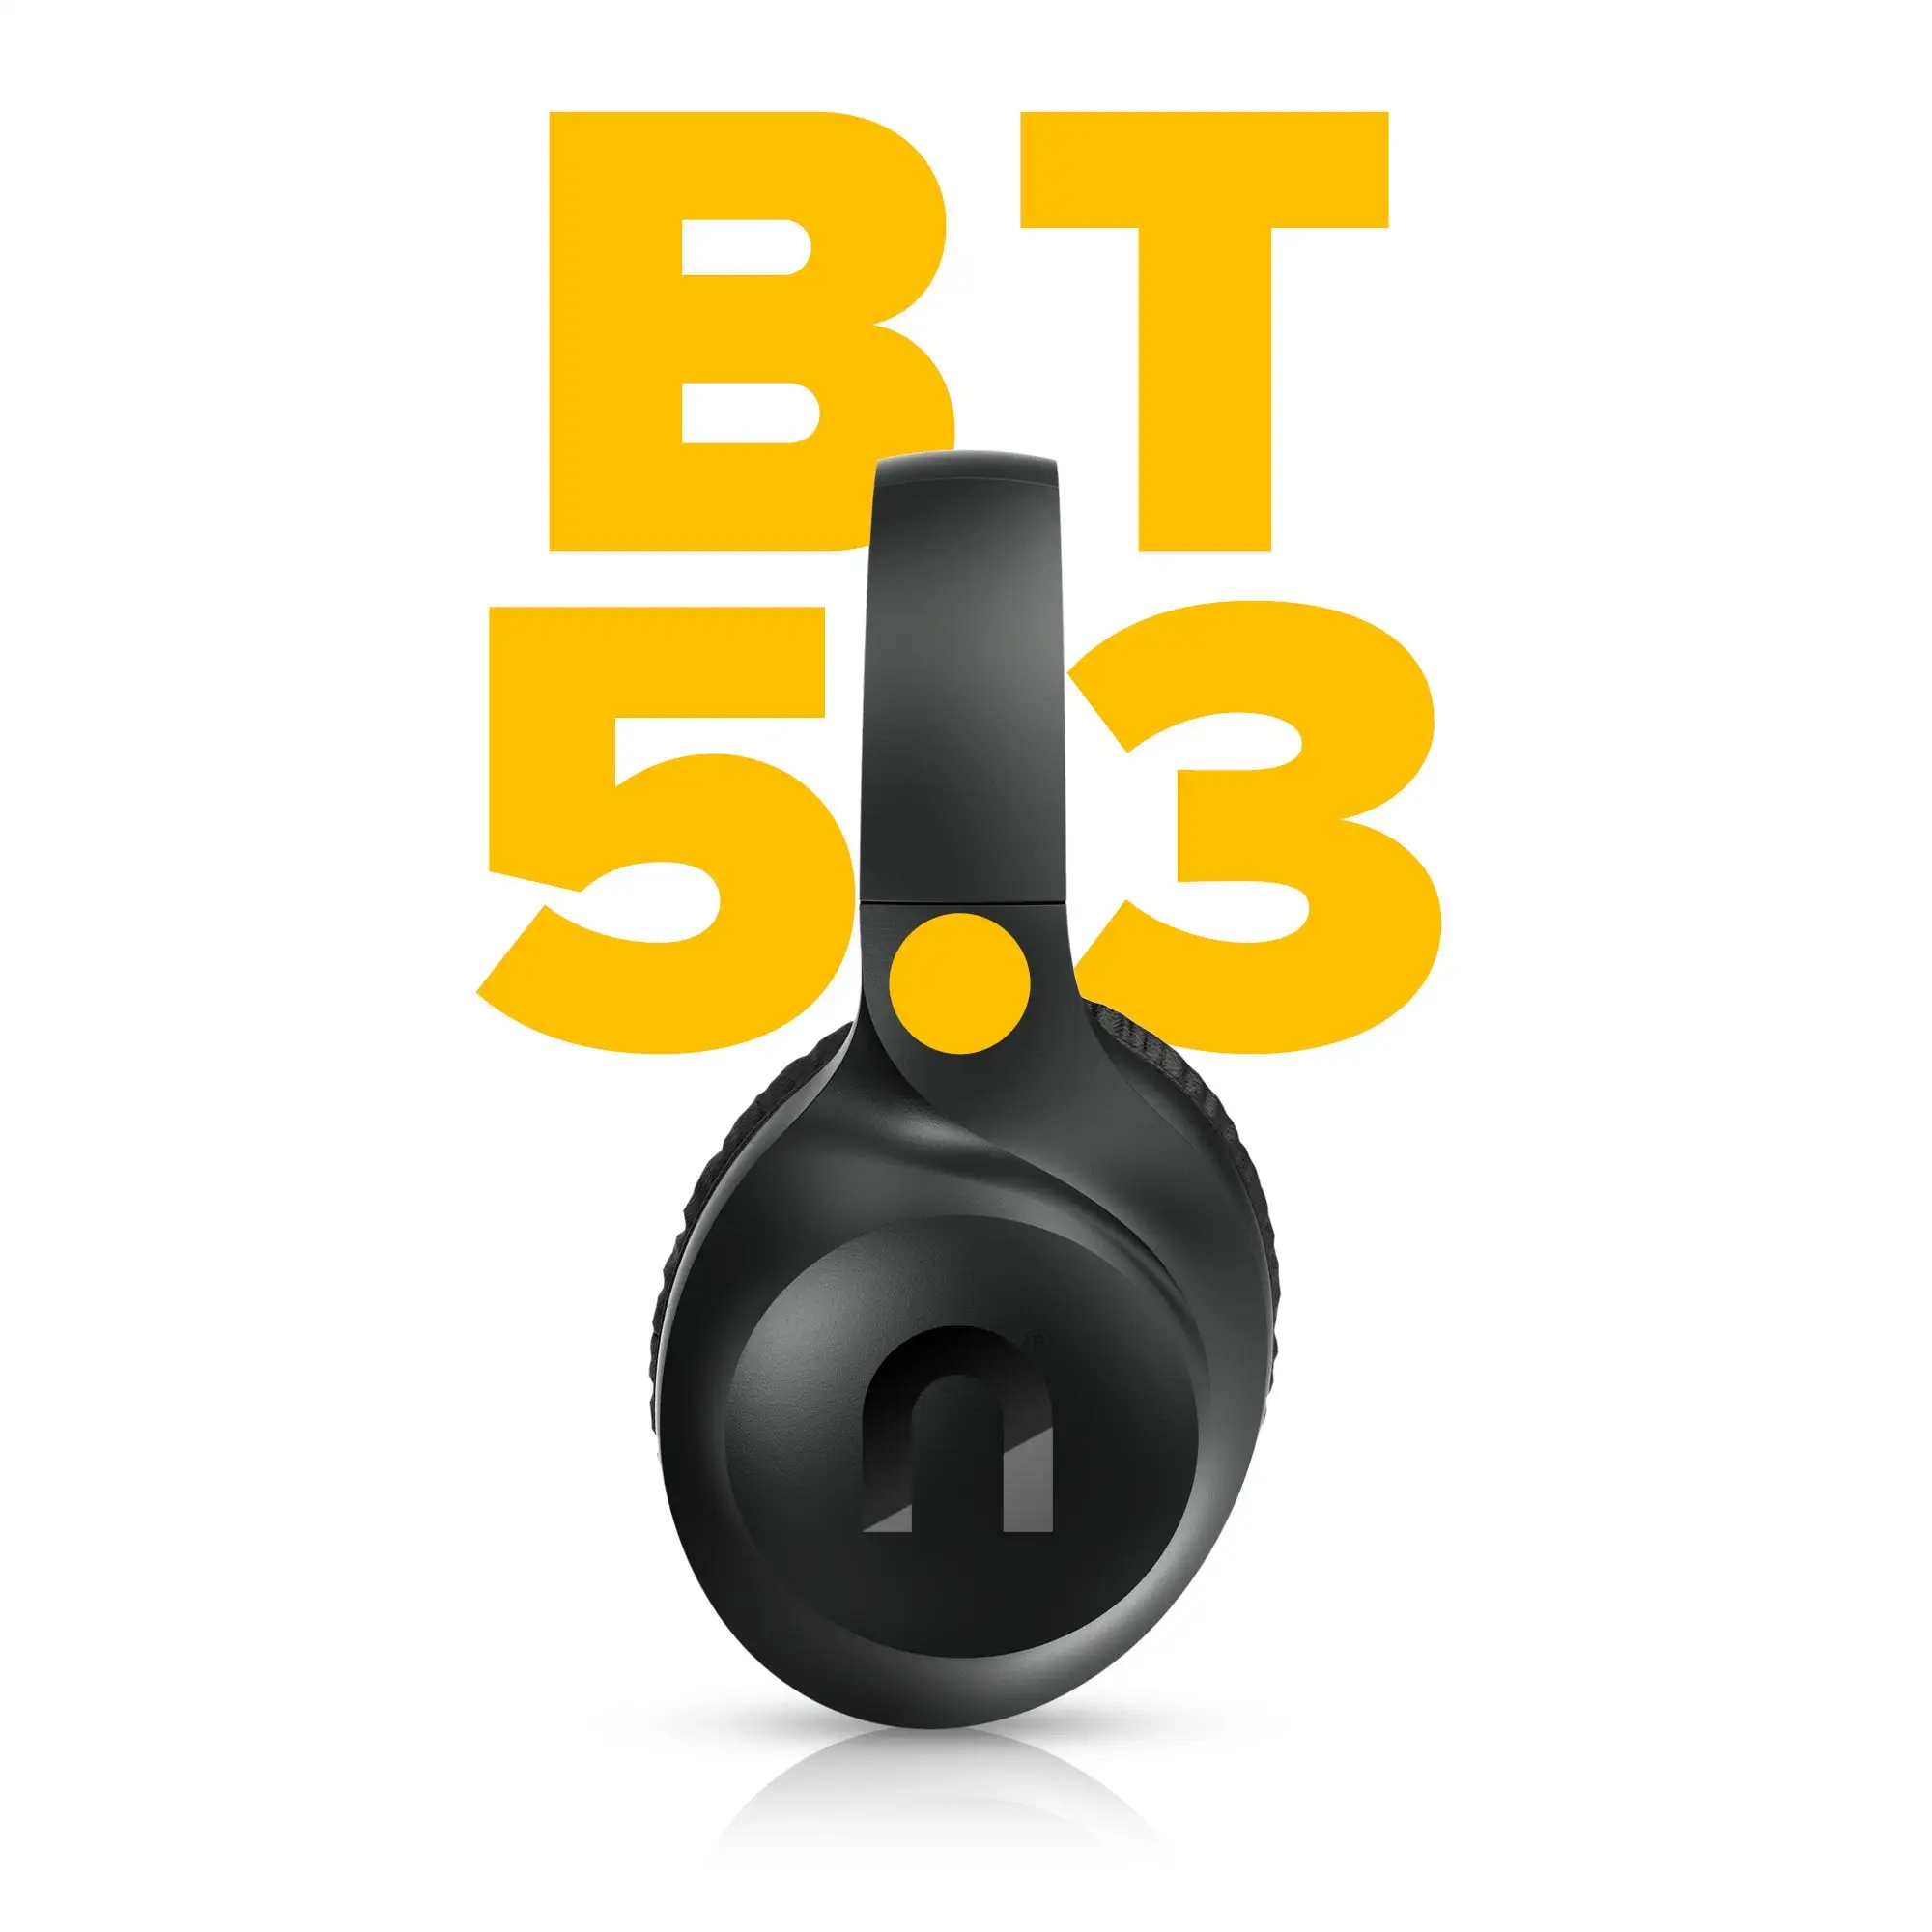  Slušalke Bluetooth Niceboy Hive XL 3 vsebujejo mikrofon za prostoročno telefoniranje, aplikacijo, ionski izenačevalnik, odličen zvok, dolgo življenjsko dobo baterije, glasovni nadzor in še več. 